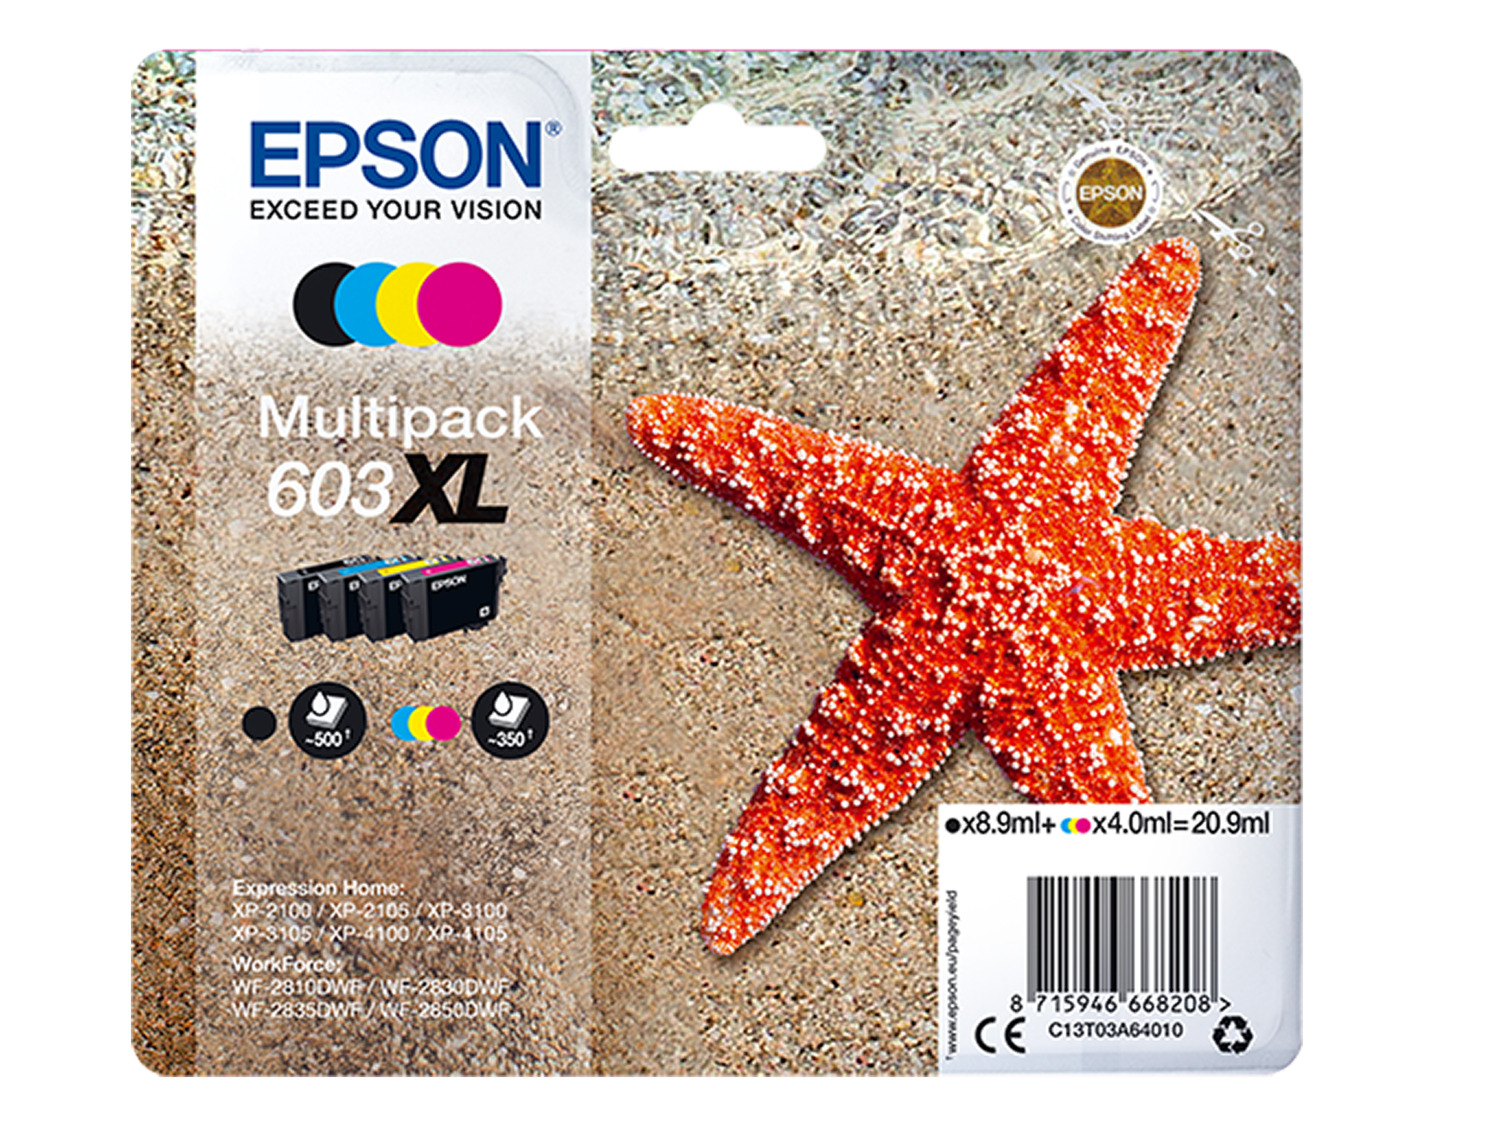 EPSON »603 XL« Seestern Multipack Tintenpatronen Schwa…